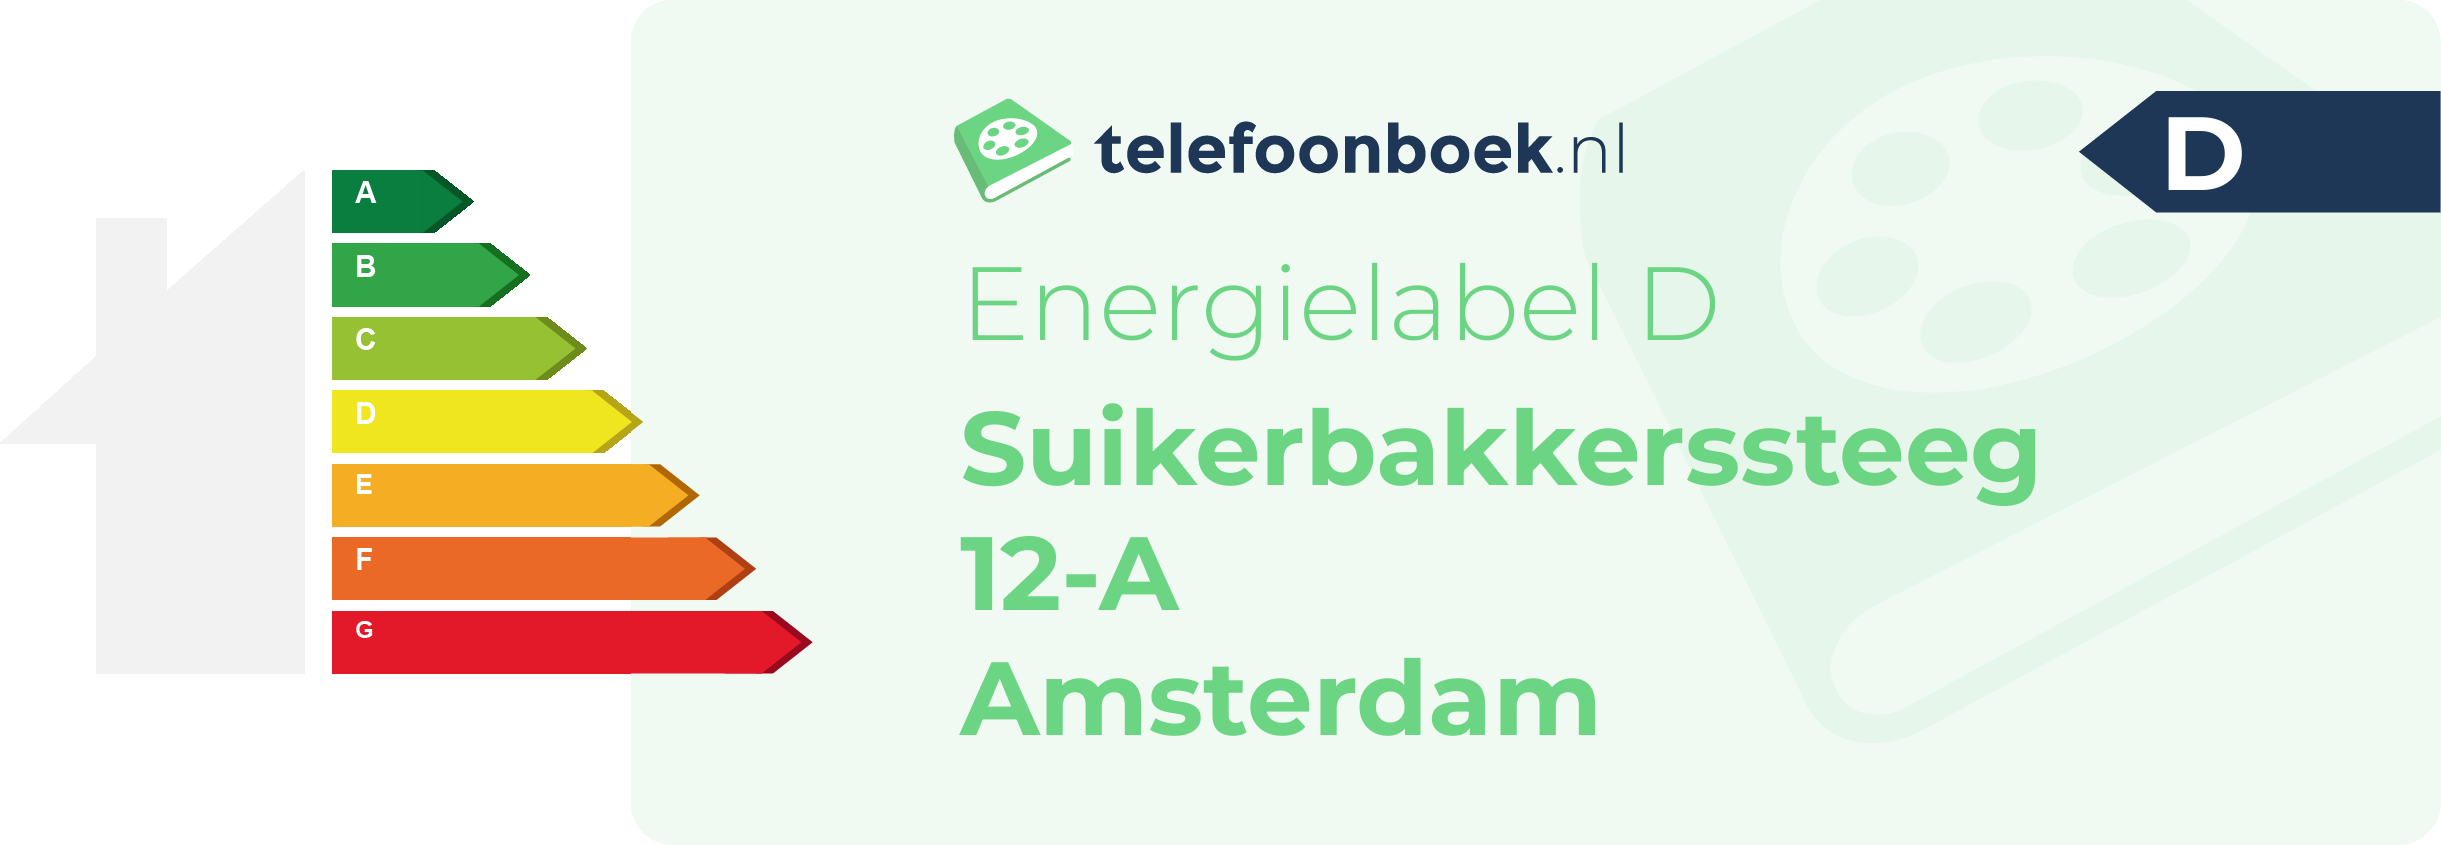 Energielabel Suikerbakkerssteeg 12-A Amsterdam